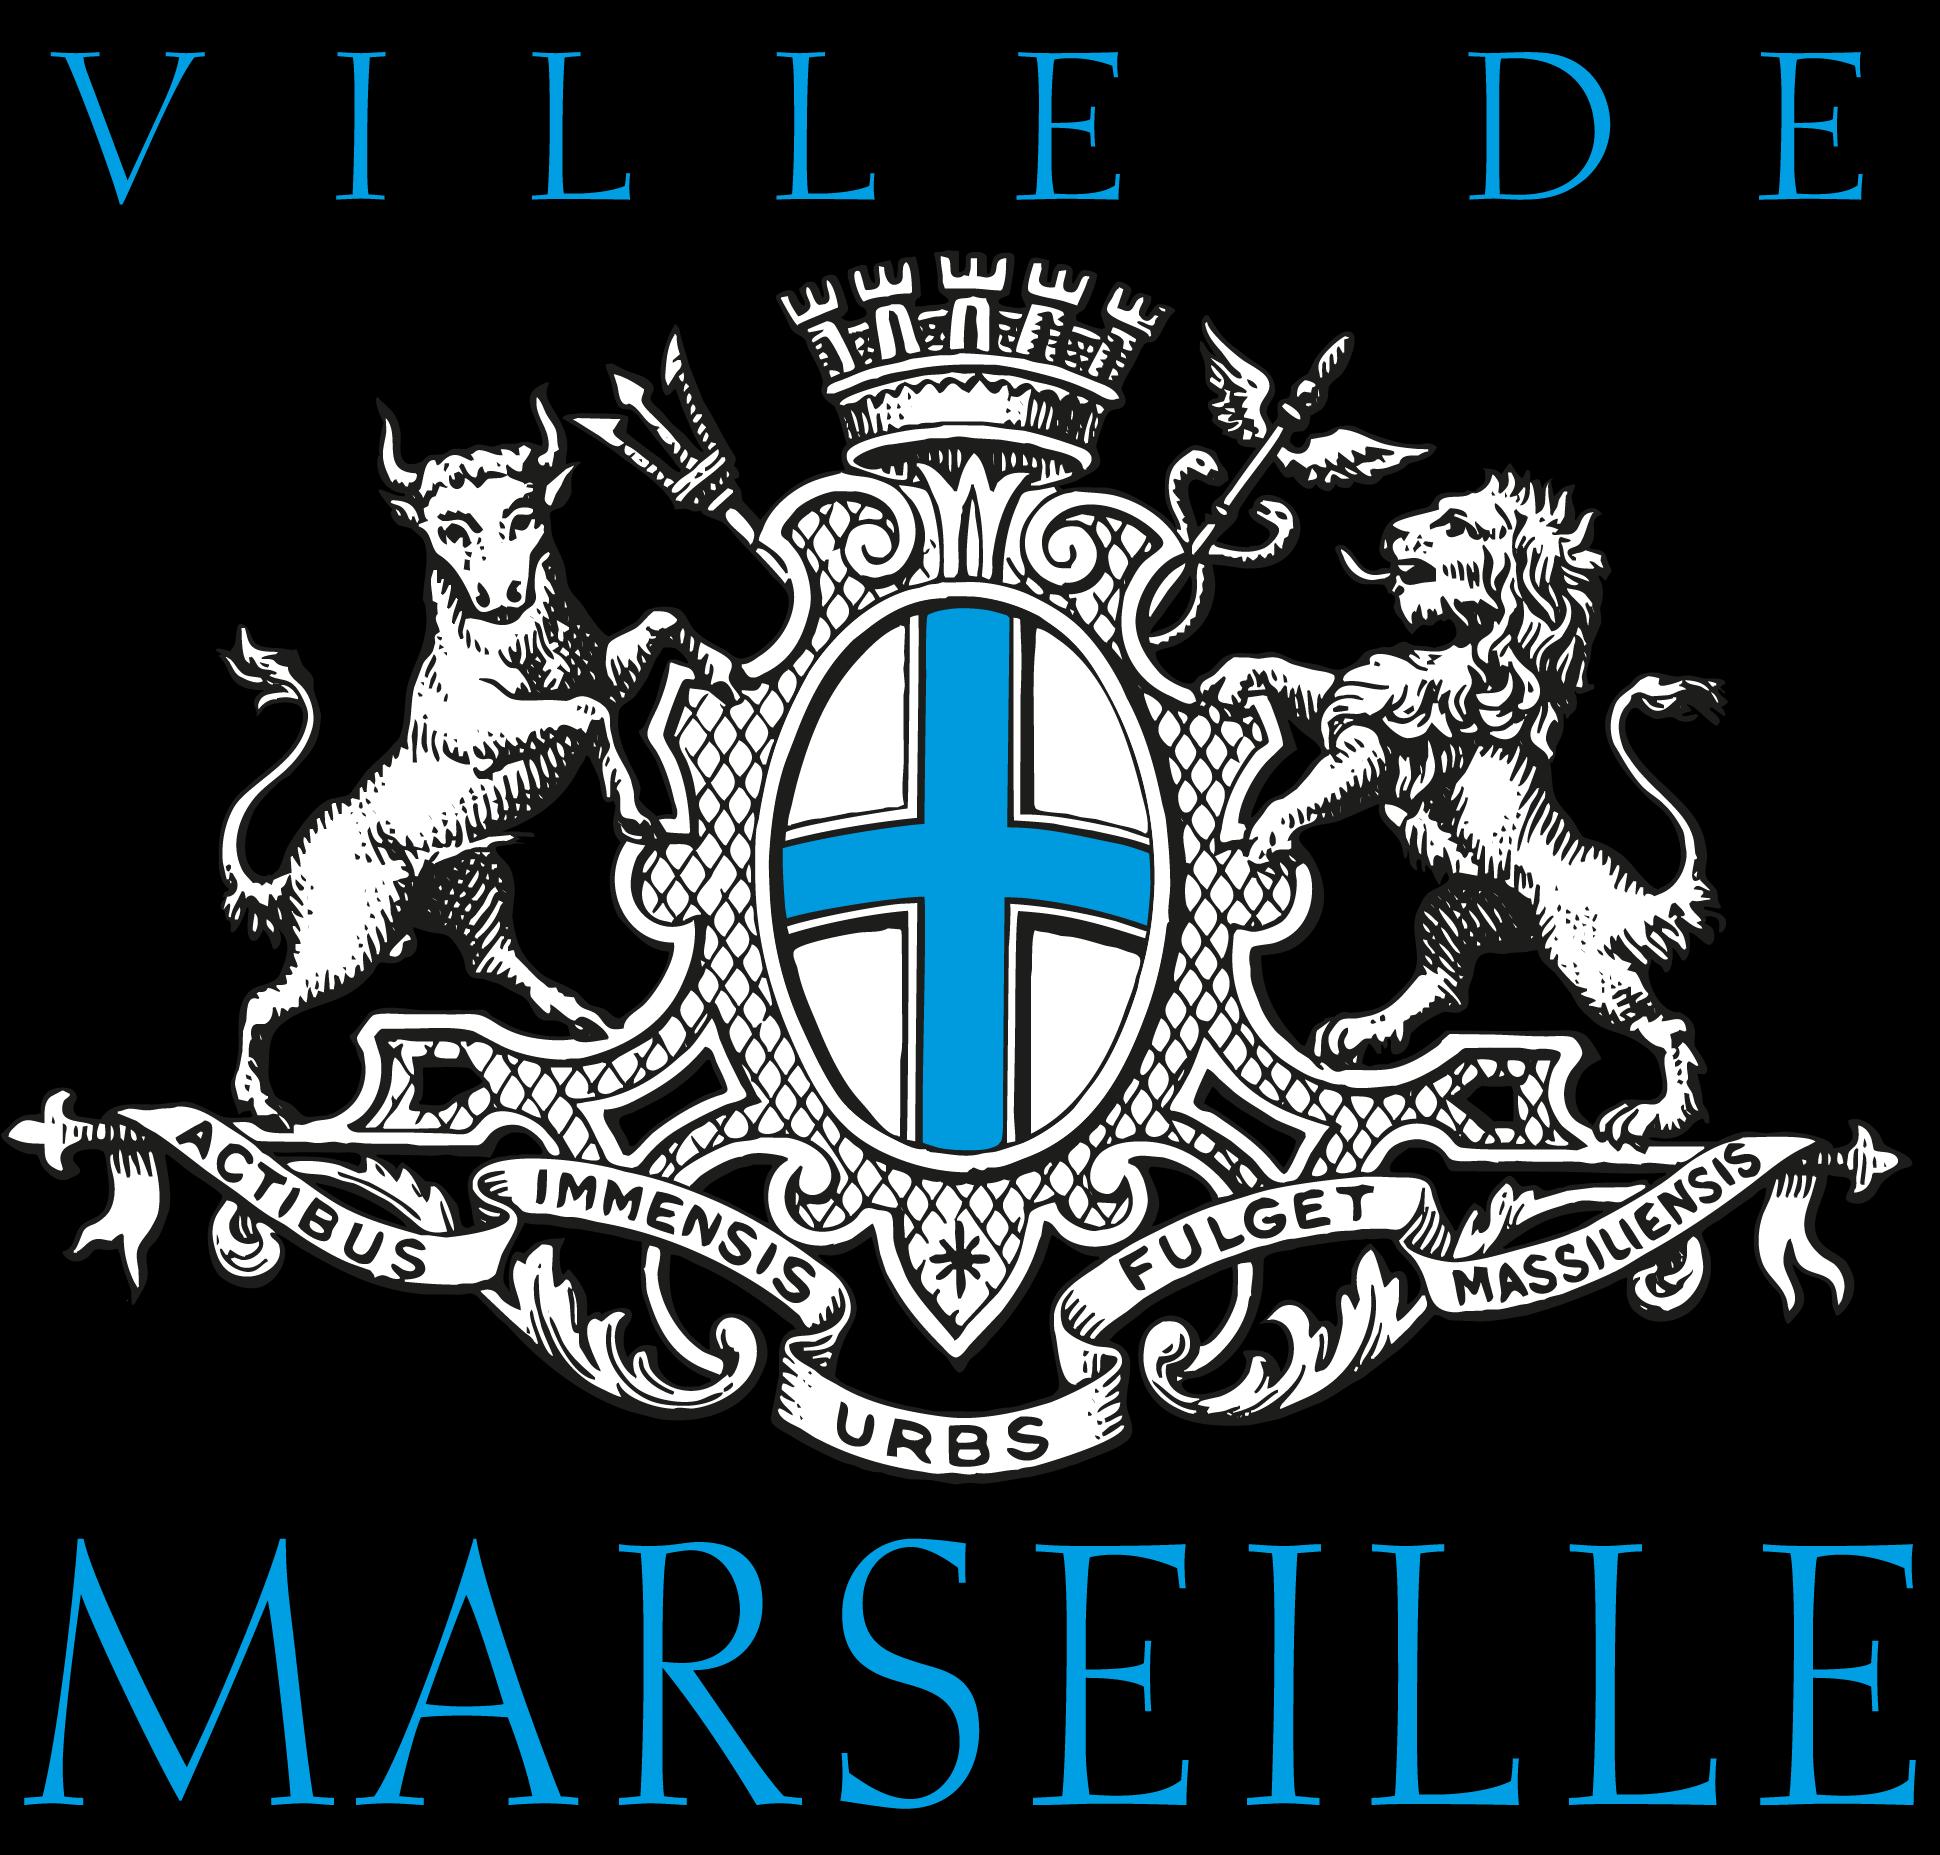 Mairie Du 3e Secteur - 4e Et 5e Arrondissements Marseille